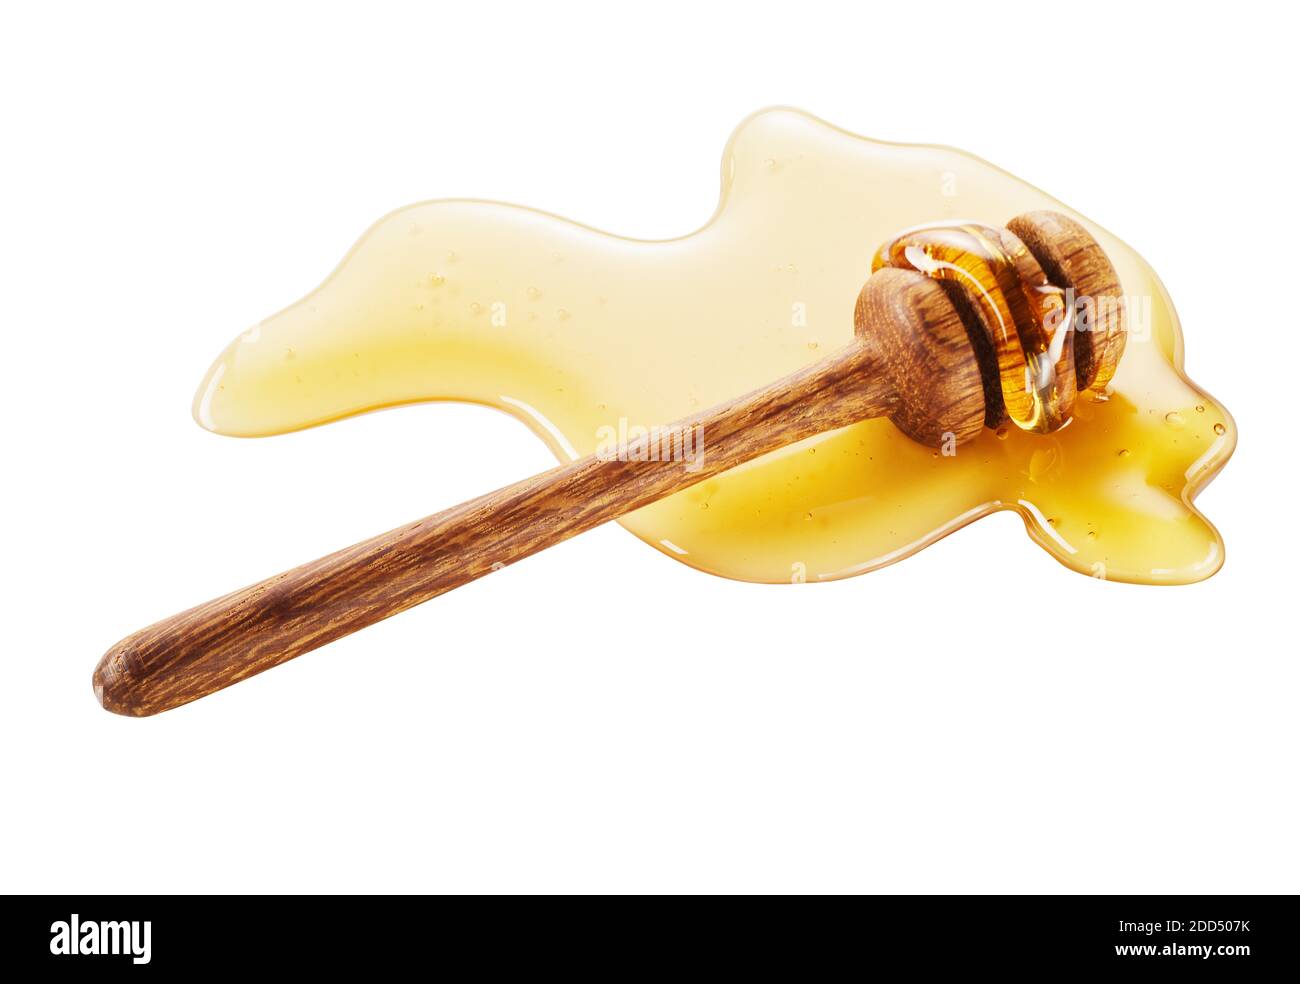 Vista ravvicinata del cucchiaia in legno con miele fresco versato, isolato su sfondo bianco Foto Stock